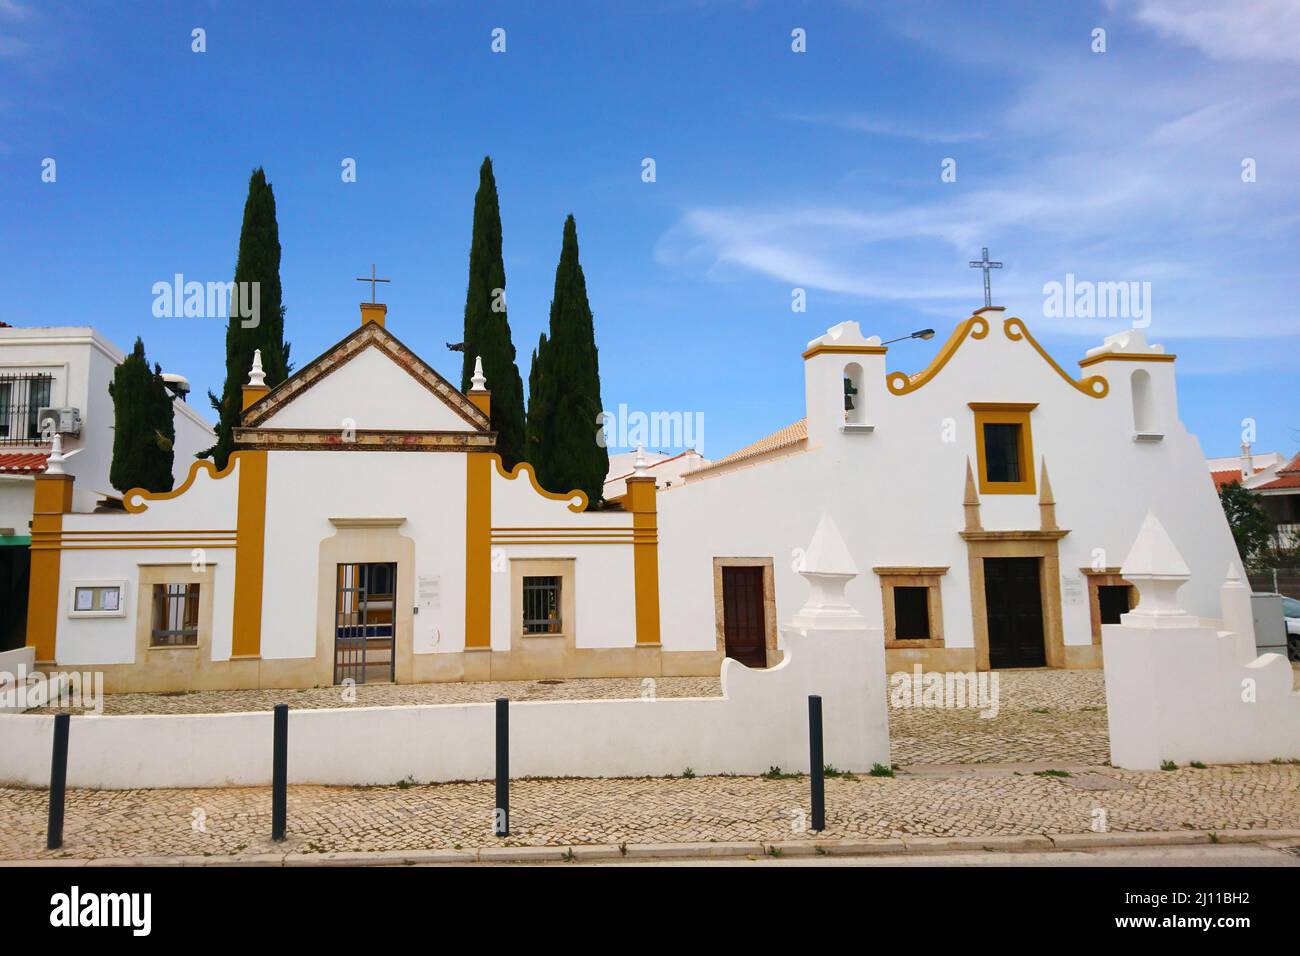 Small church in Algarve Portugal Stock Photo